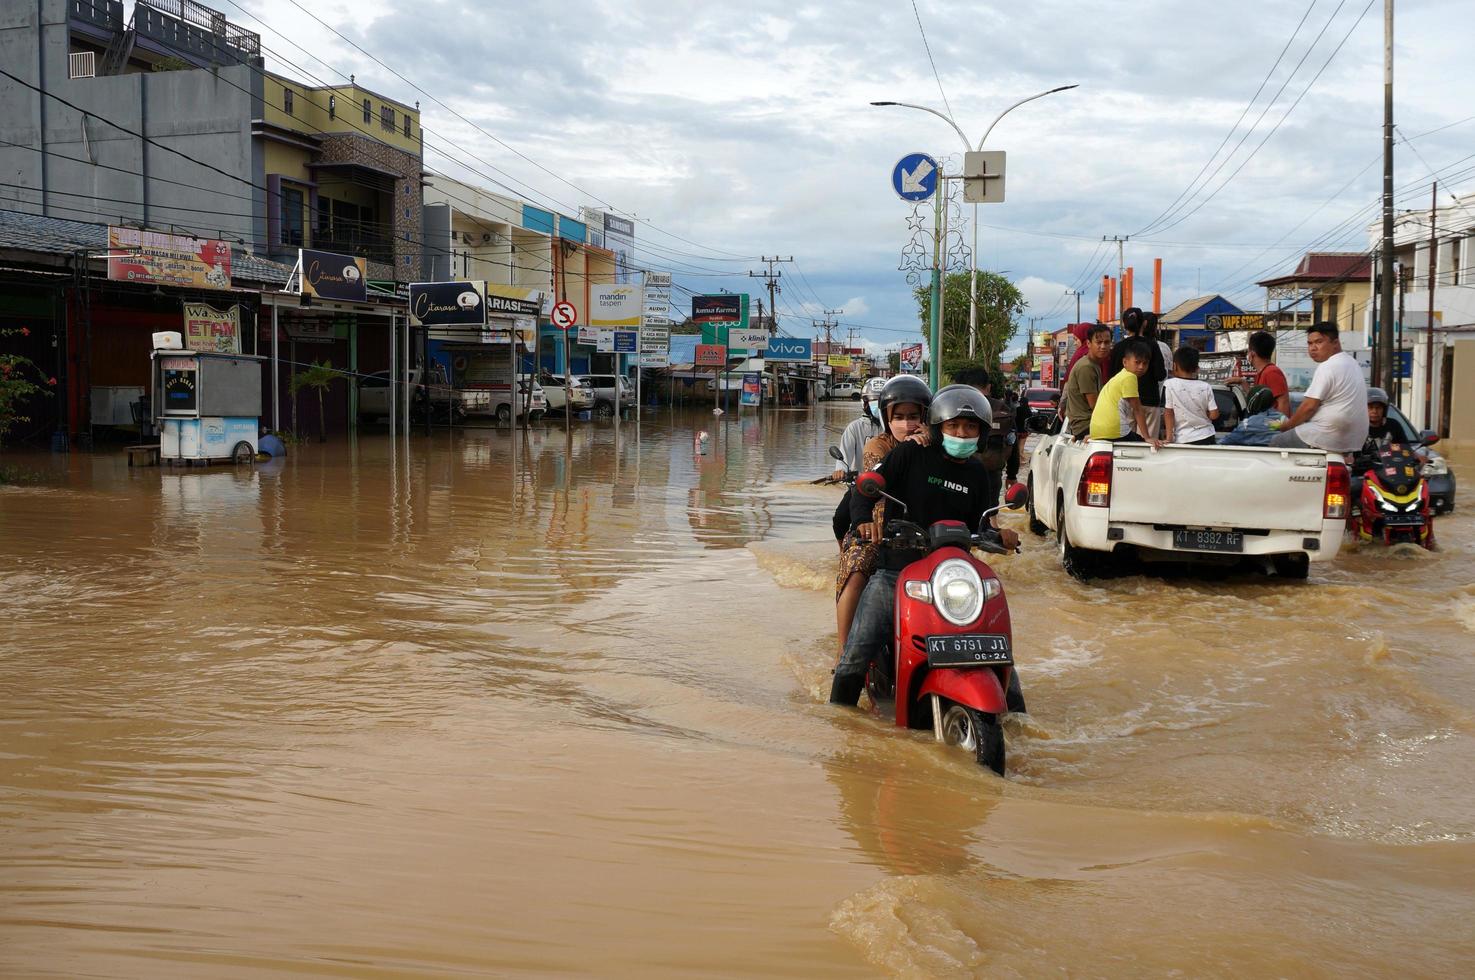 leste de kutai, leste de kalimantan, indonésia, 2022 - inundações atingiram casas e rodovias por causa da alta chuva e da maré alta da água do mar. localização em sangatta, leste de kutai, indonésia. foto